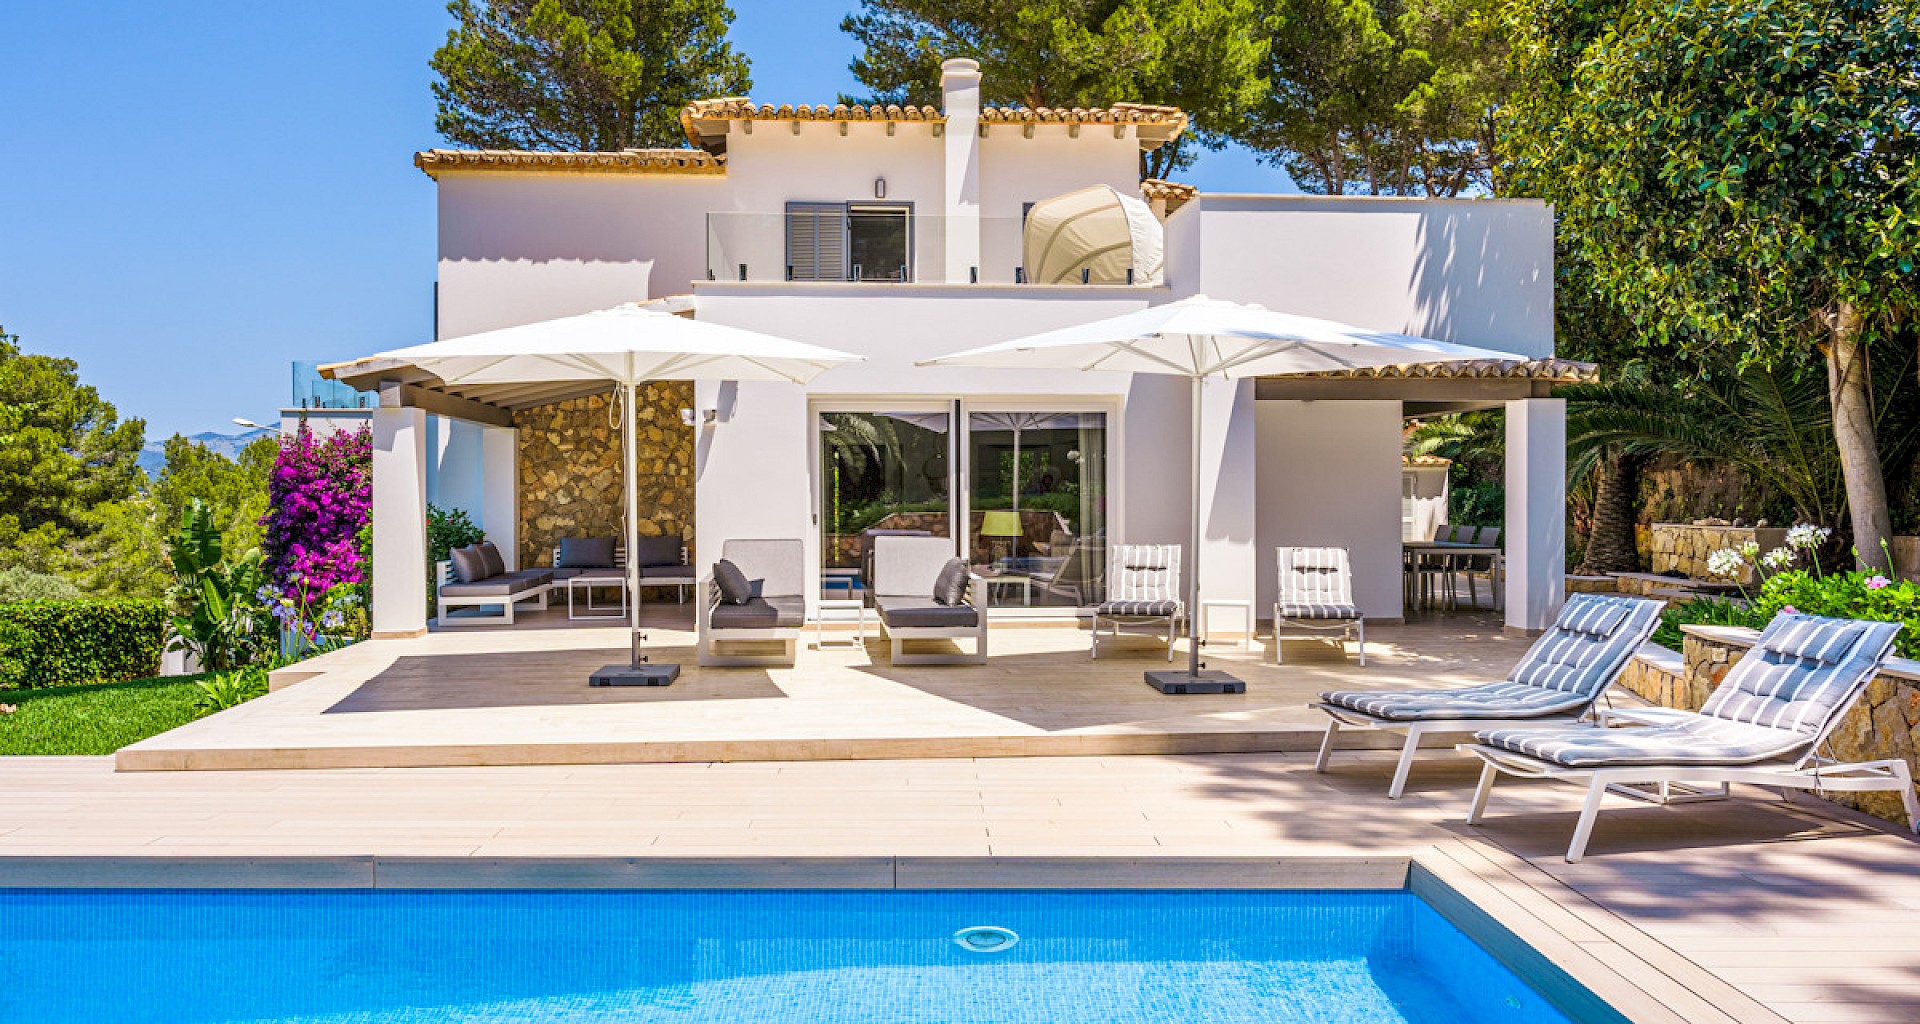 KROHN & LUEDEMANN Luxury family villa in Santa Ponsa with pool and garden Villa in Santa Ponsa mit Pool und Garten 27